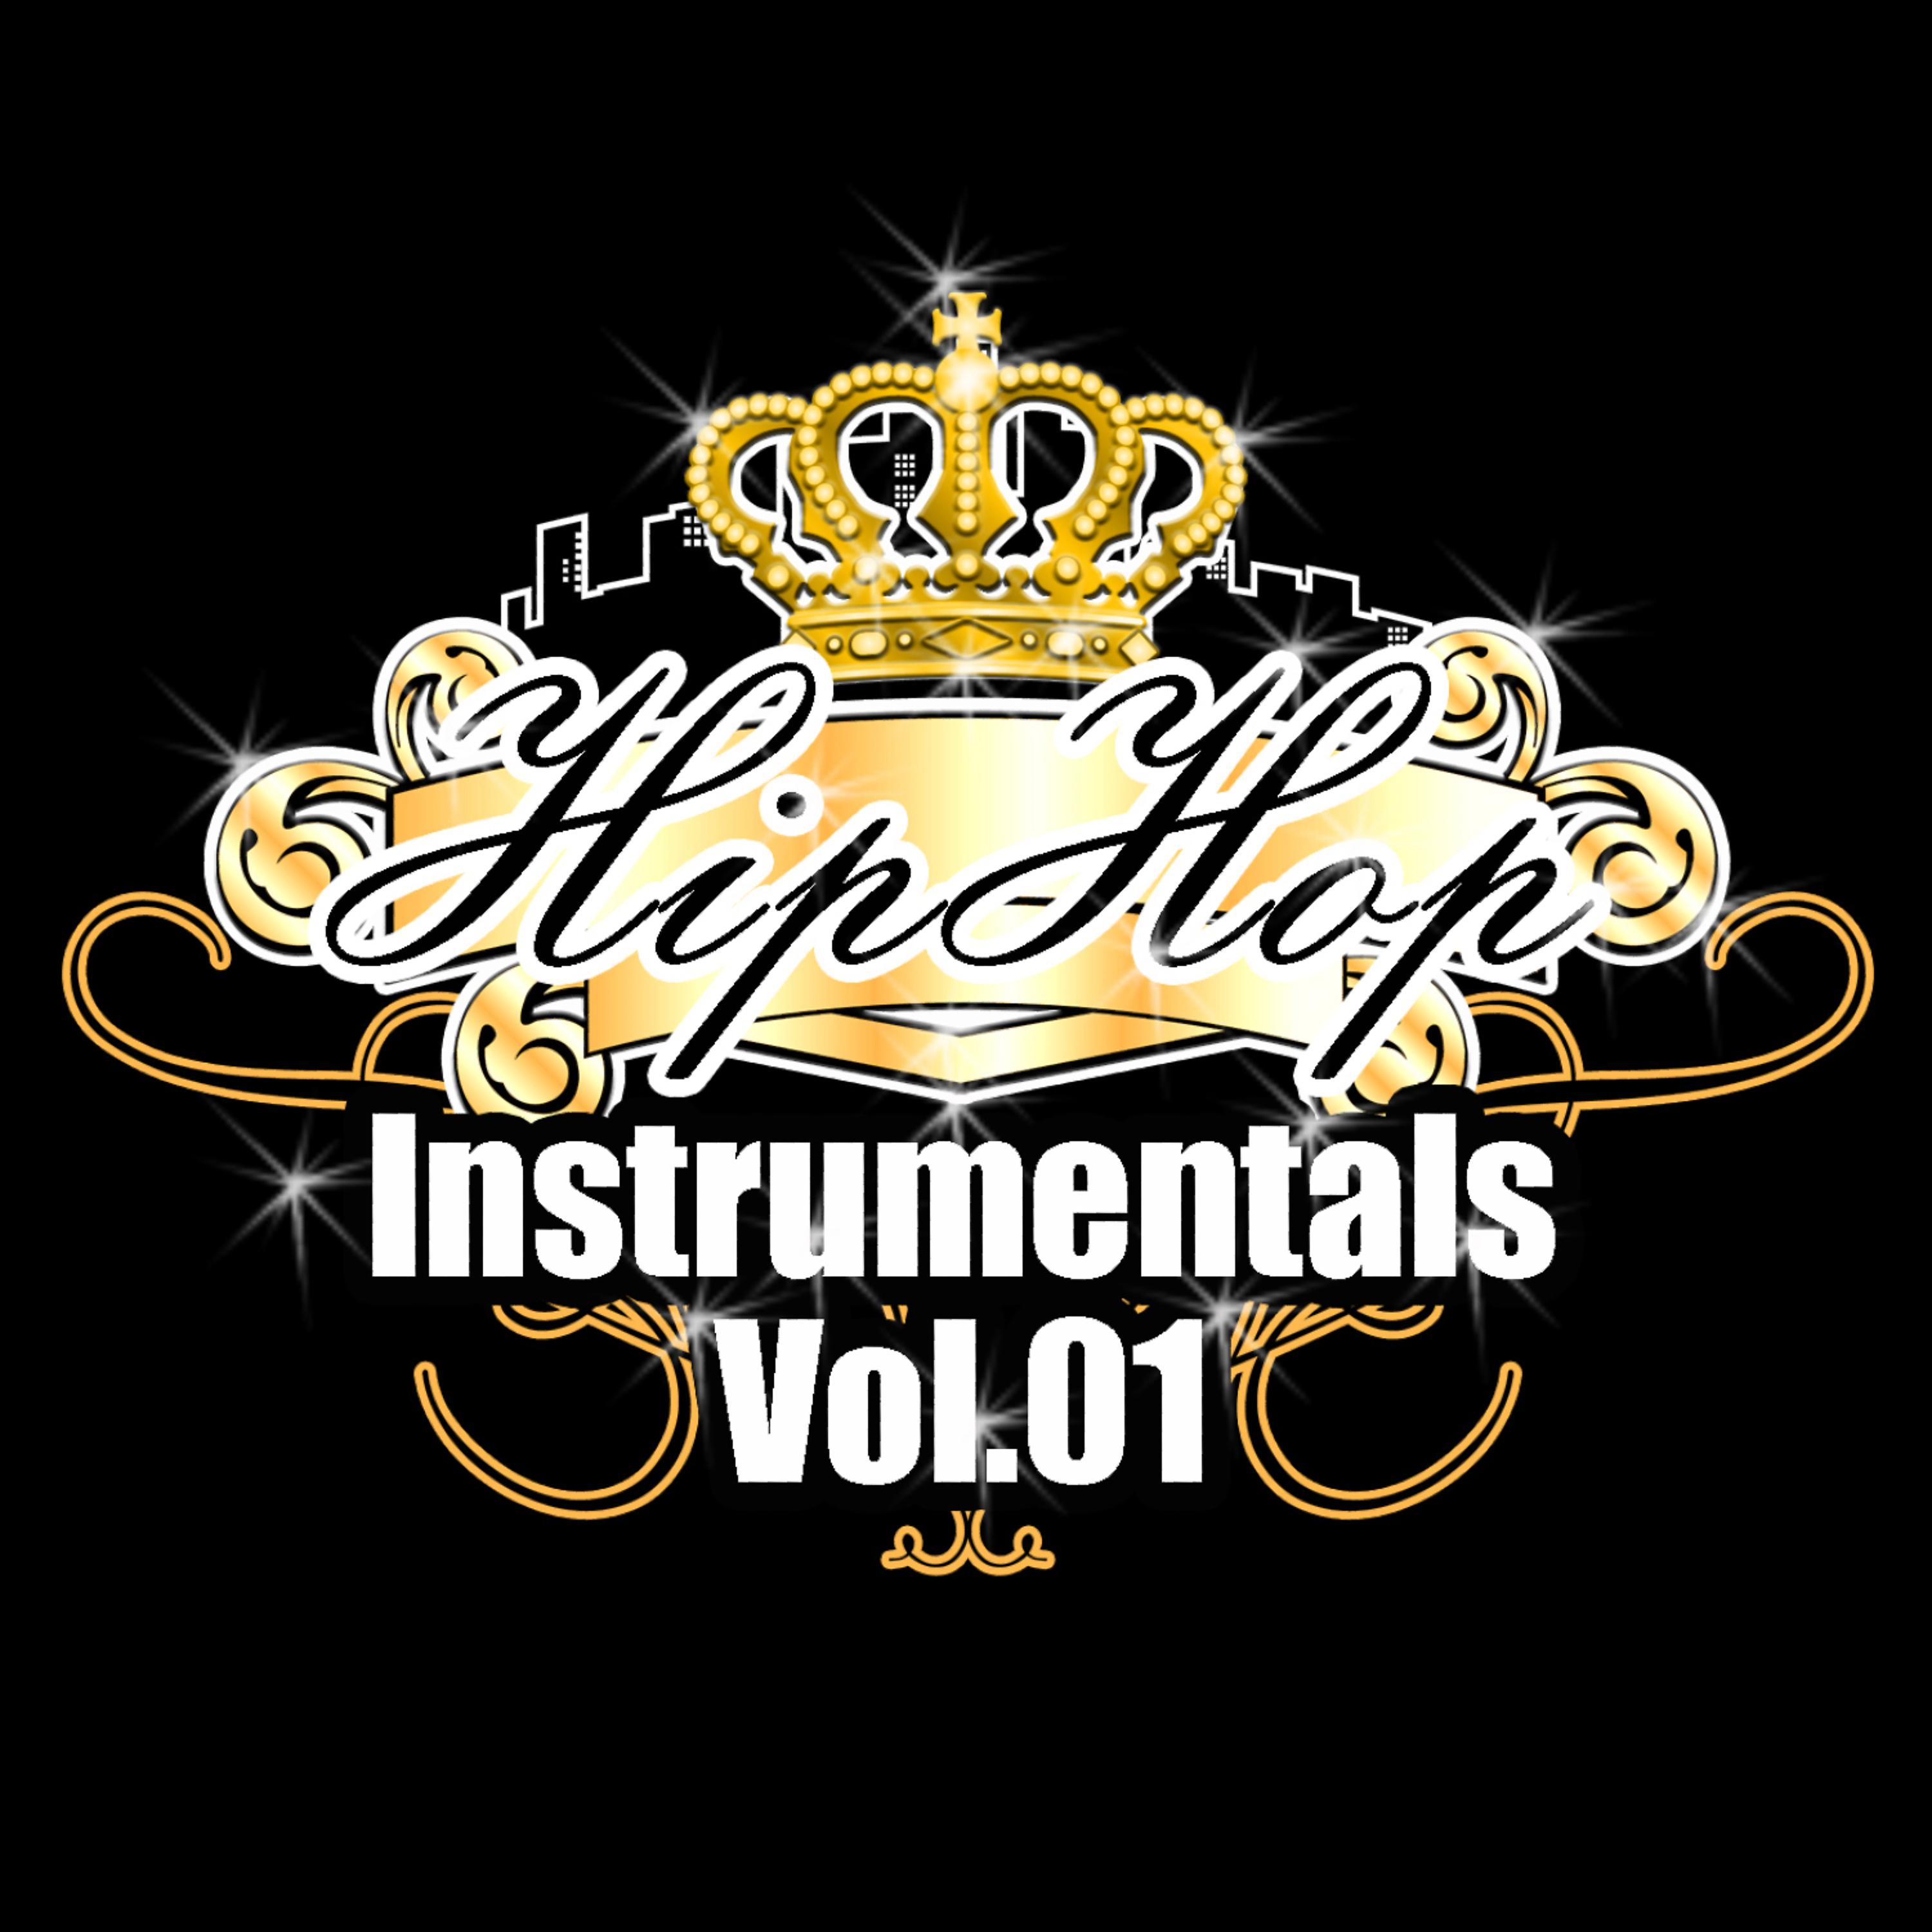 Постер альбома Hip Hop Instrumentals, Vol. 1